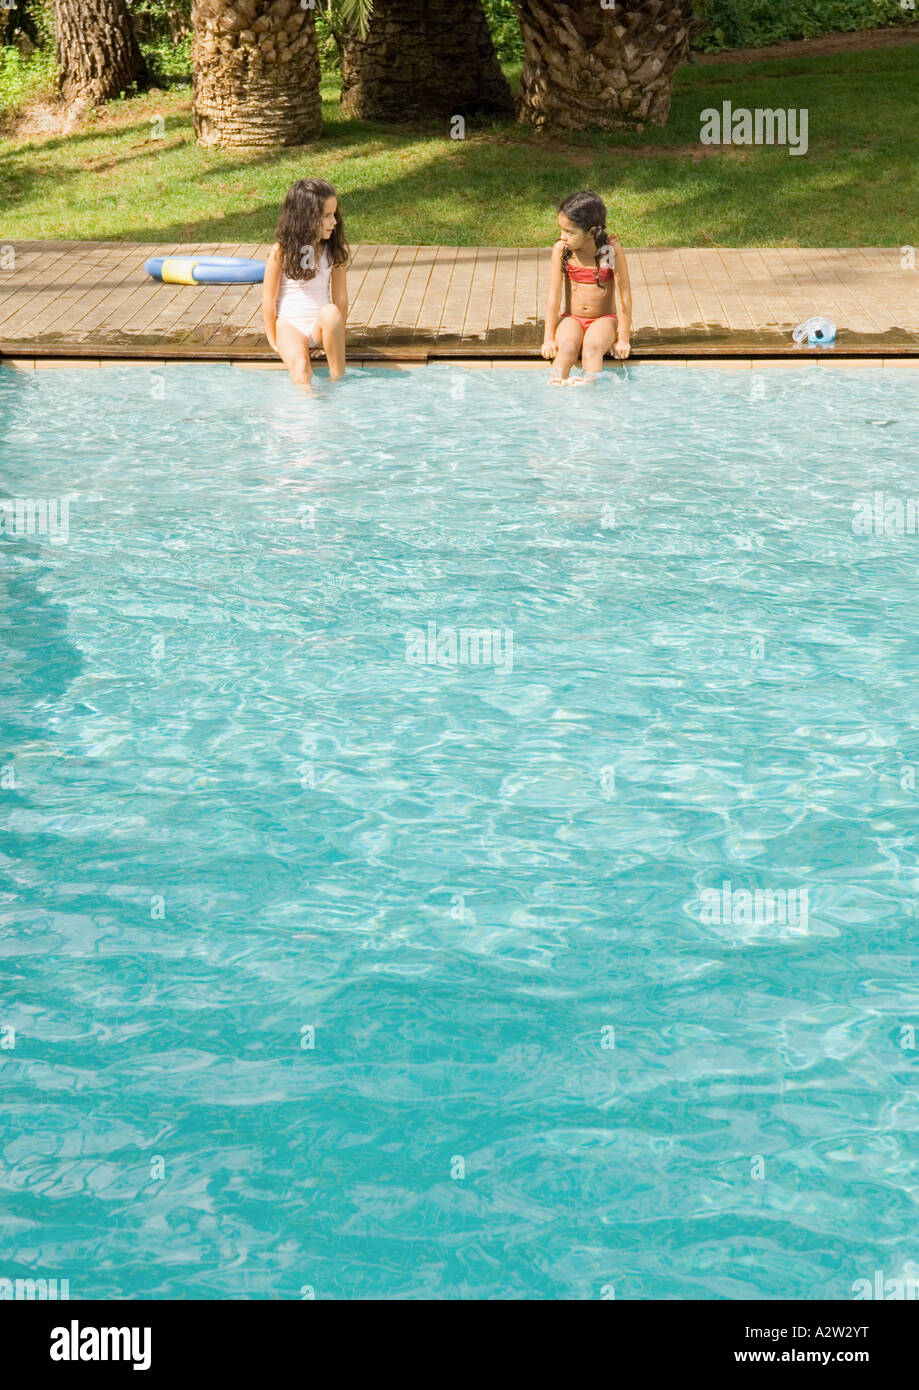 Zwei Mädchen Sitzen Am Rand Des Swimming Pool Stockfotografie Alamy 